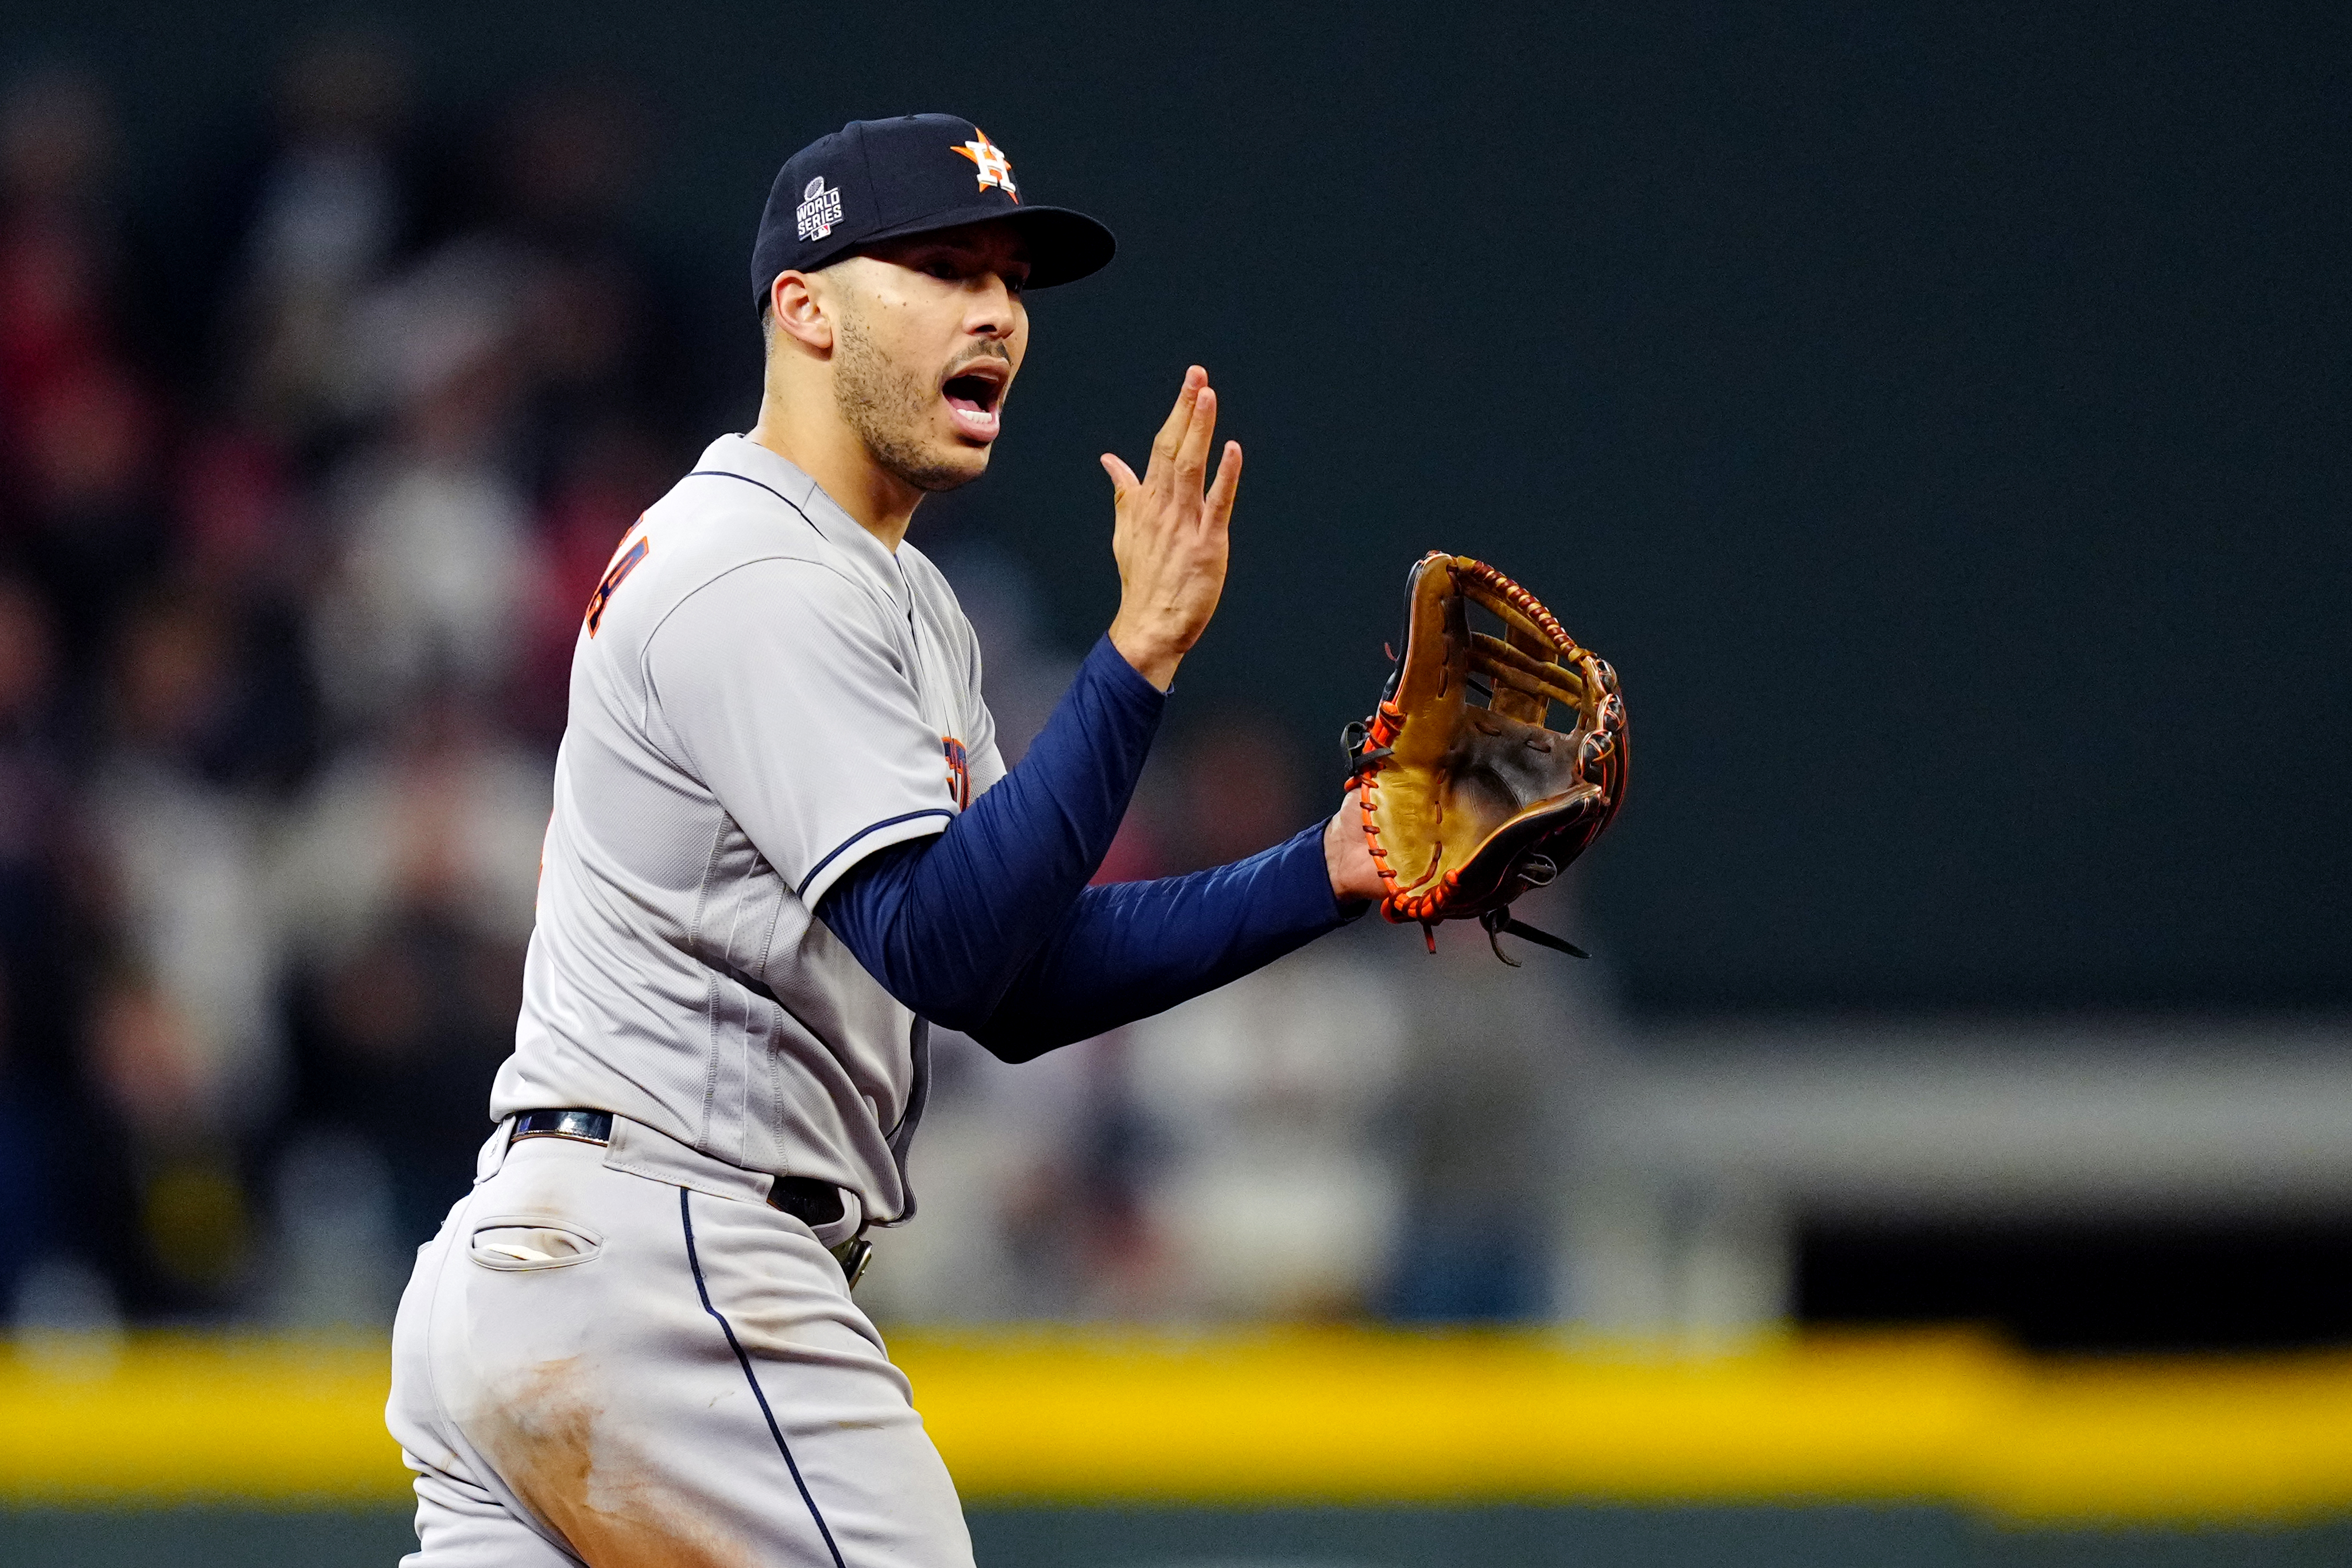 RUMOR: Potential Carlos Correa return has Astros players 'buzzing